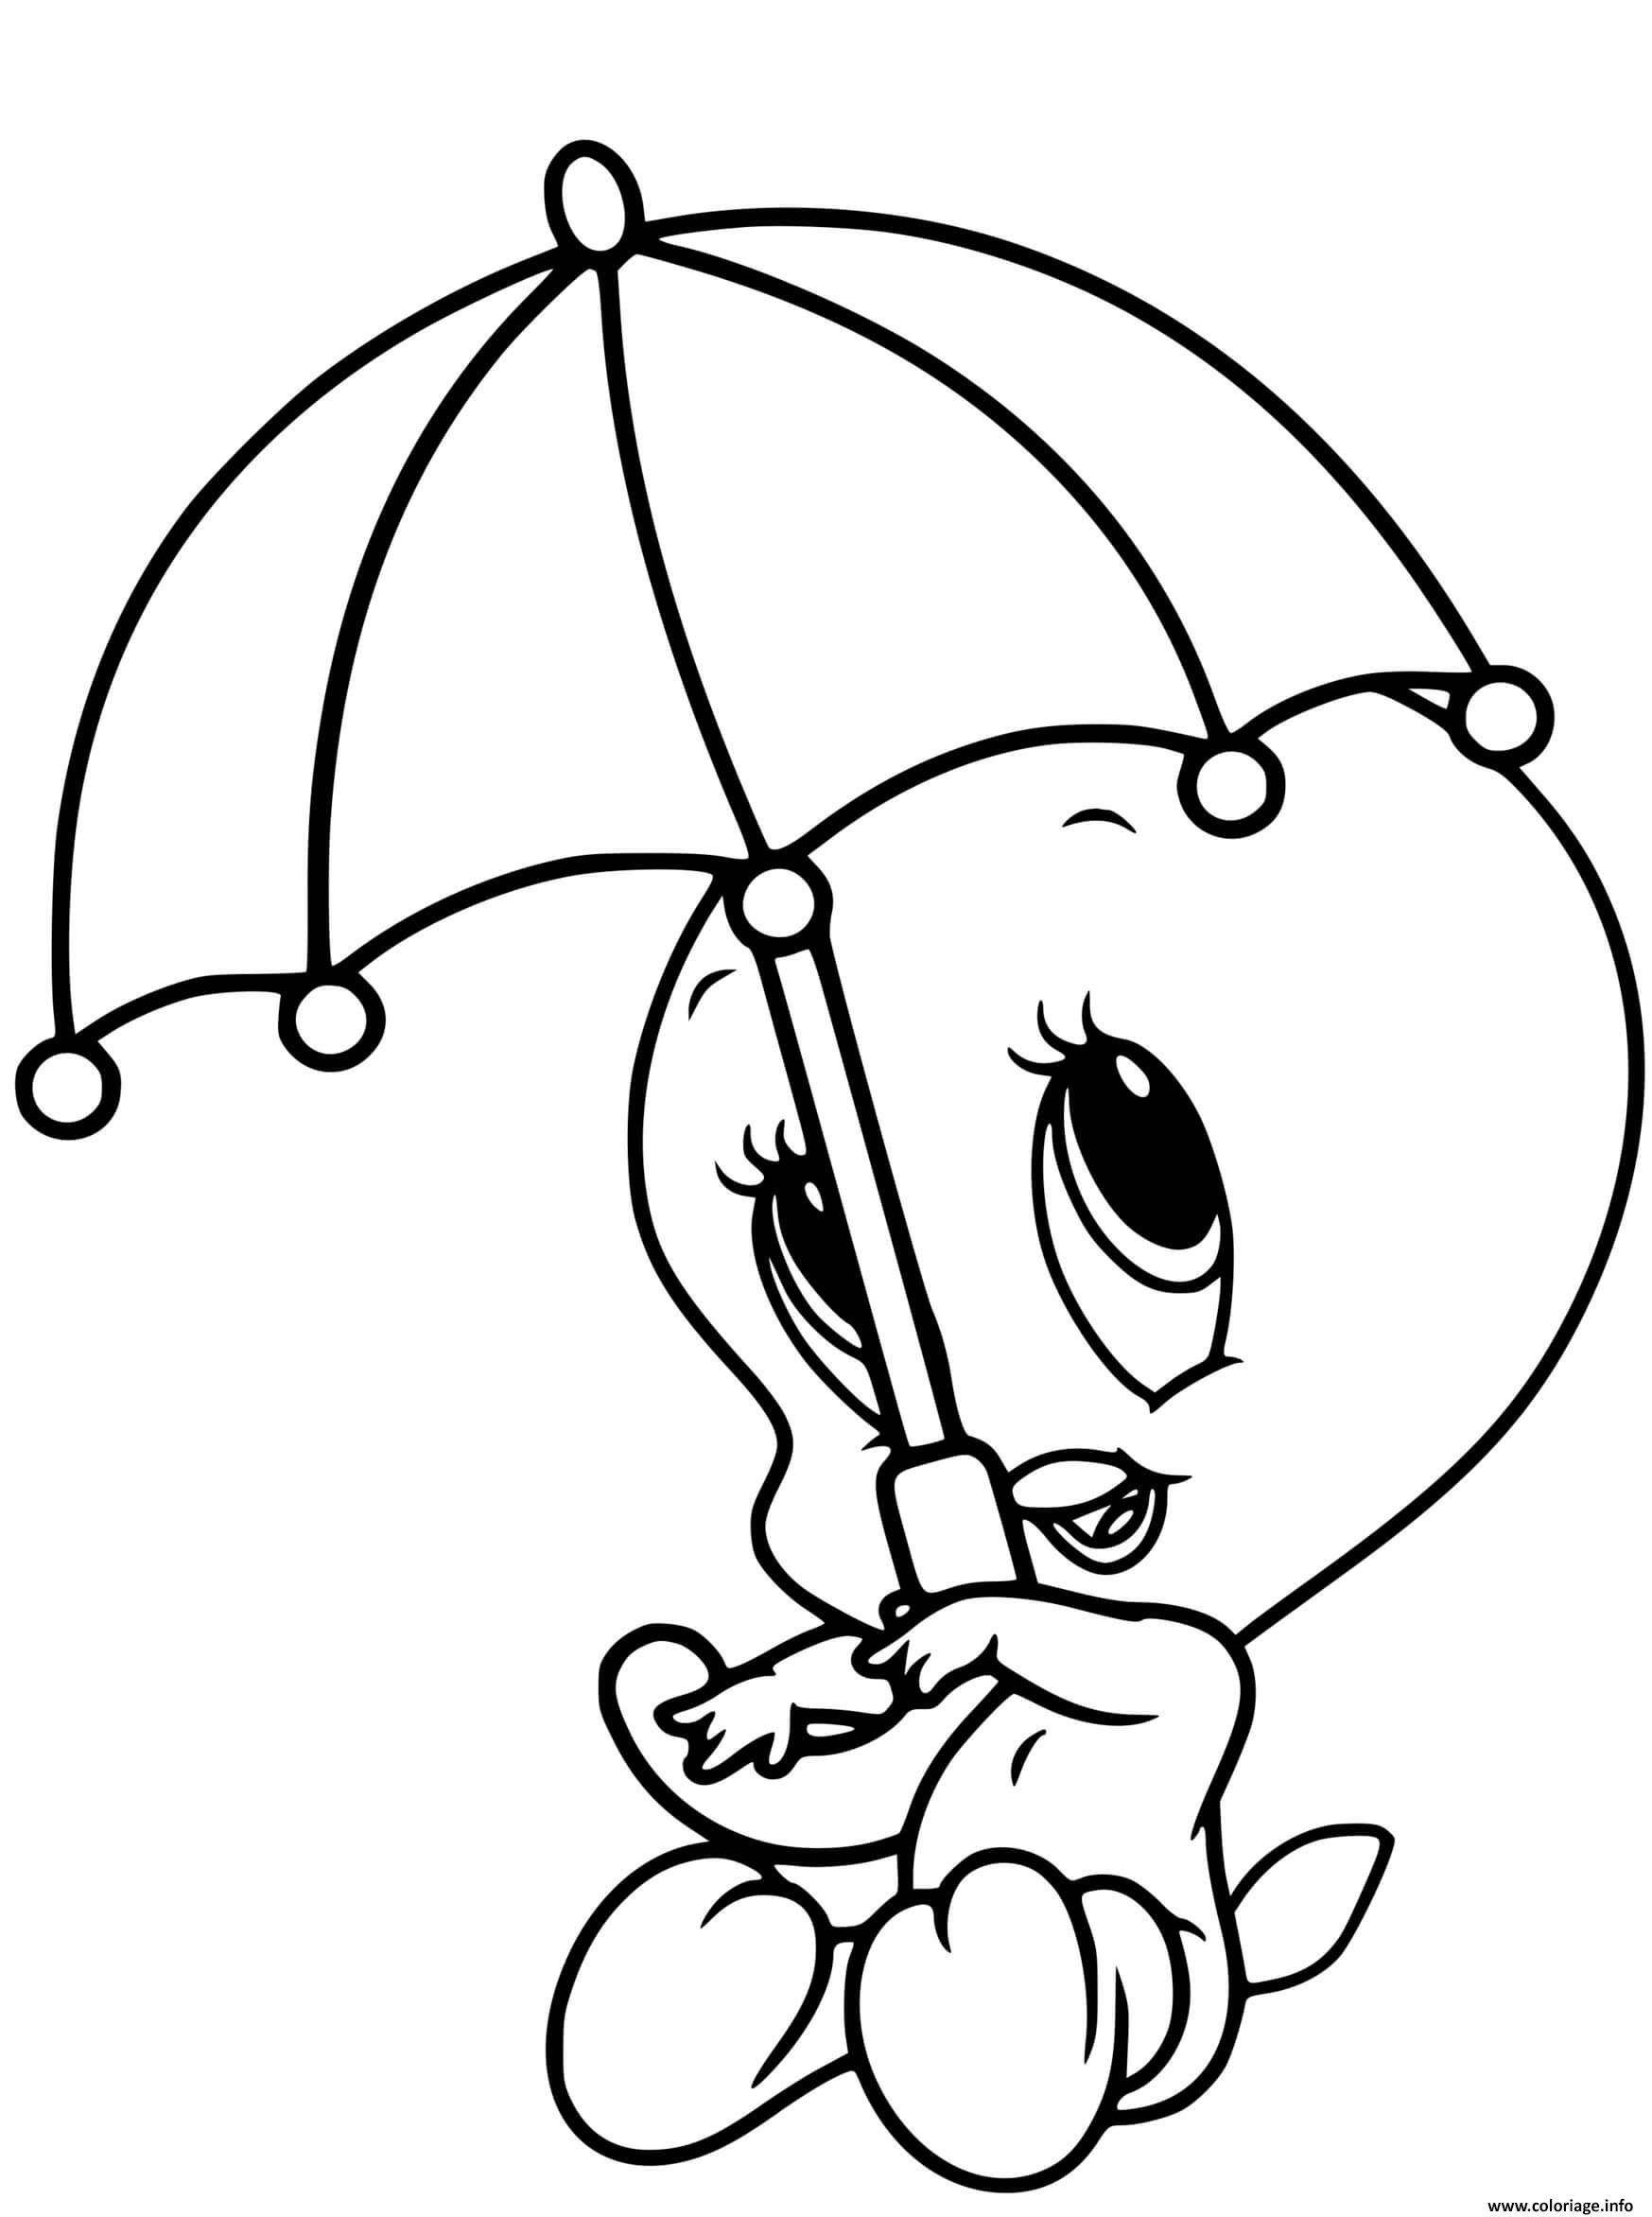 Раскраски ти ти. Раскраска малышка. Зонтик раскраска для детей. Твити птичка раскраска. Зайчик с зонтиком раскраска для детей.